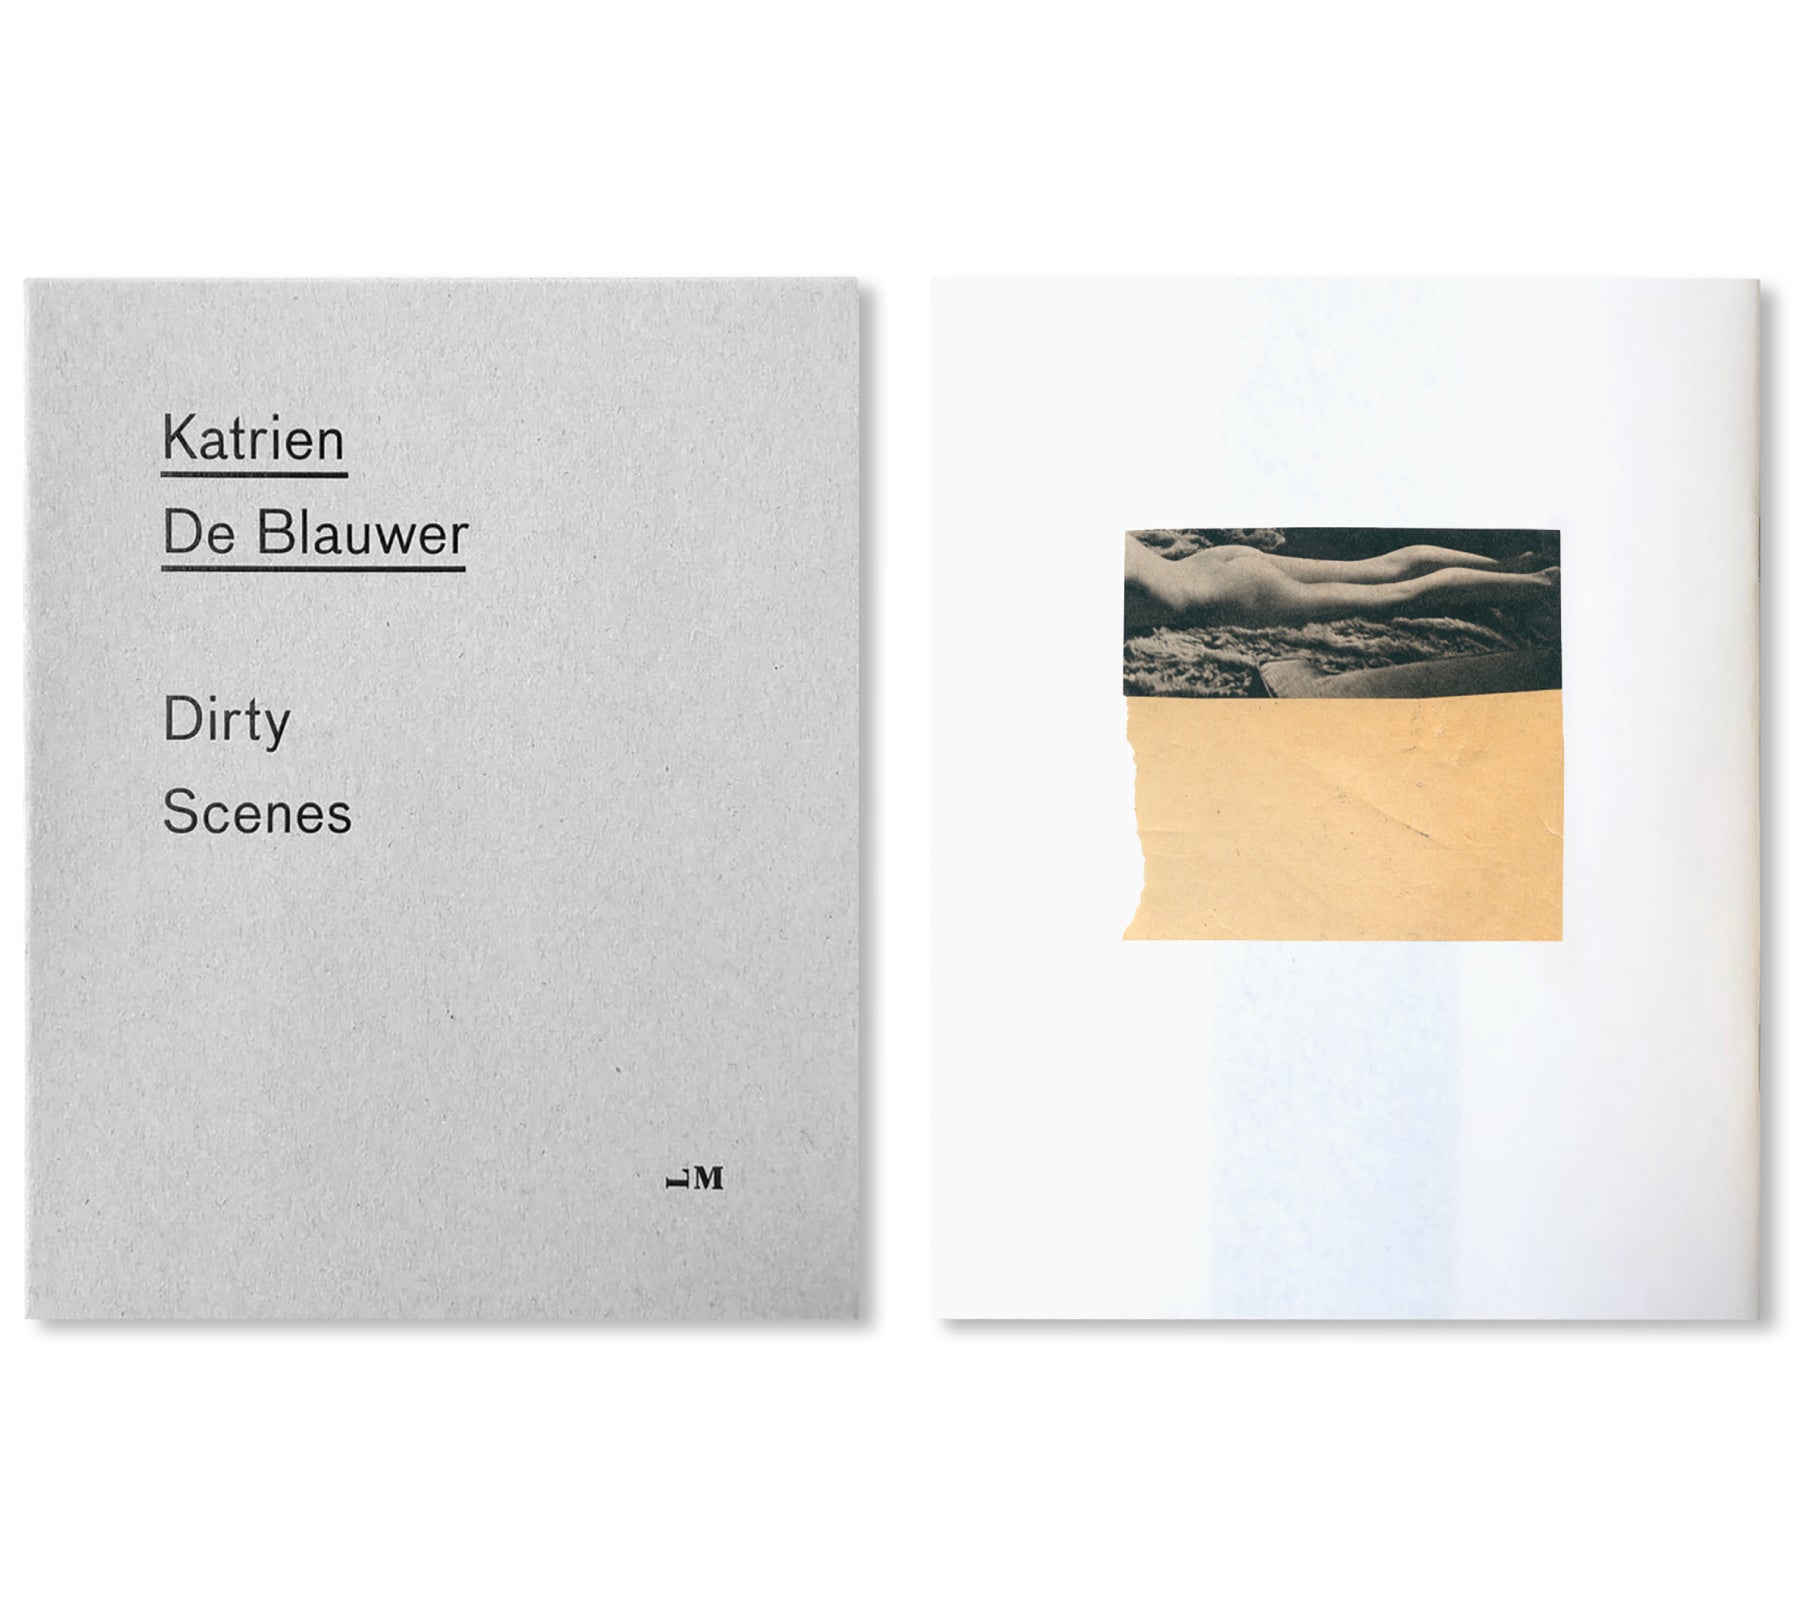 DIRTY SCENES by Katrien De Blauwer [SIGNED]